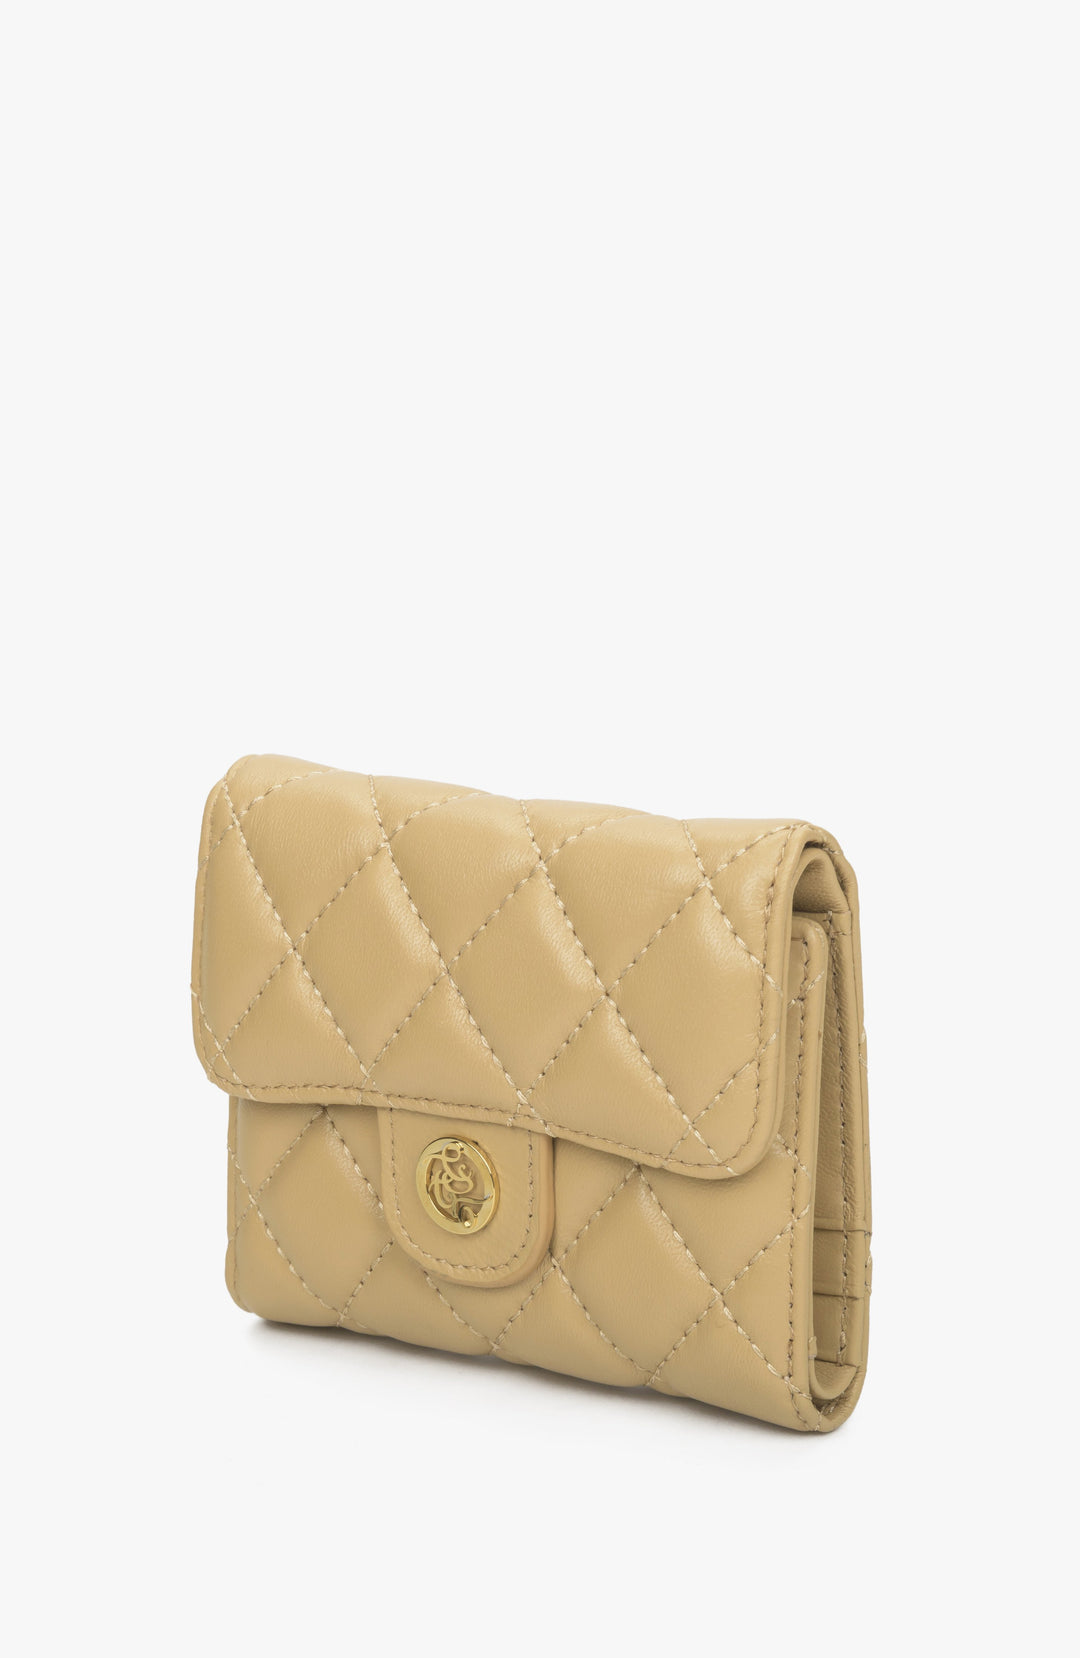 Women's beige wallet with embossing.